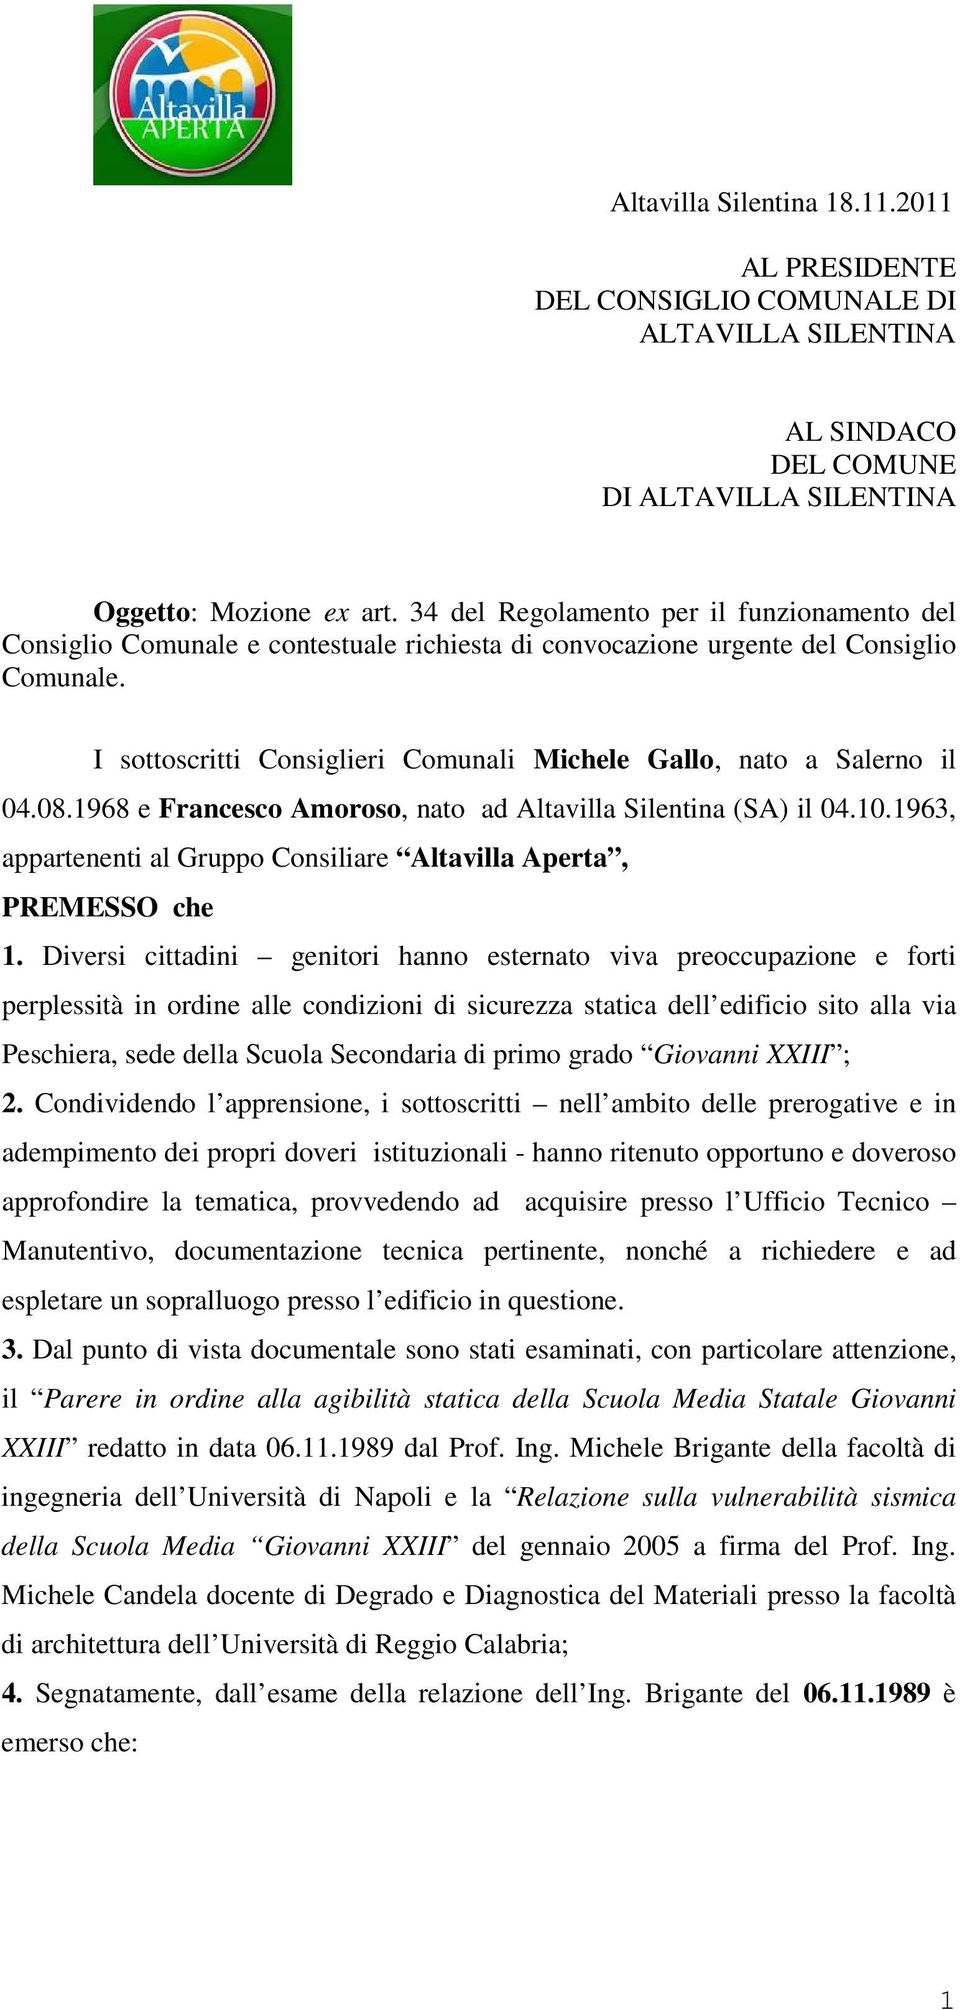 I sottoscritti Consiglieri Comunali Michele Gallo, nato a Salerno il 04.08.1968 e Francesco Amoroso, nato ad Altavilla Silentina (SA) il 04.10.